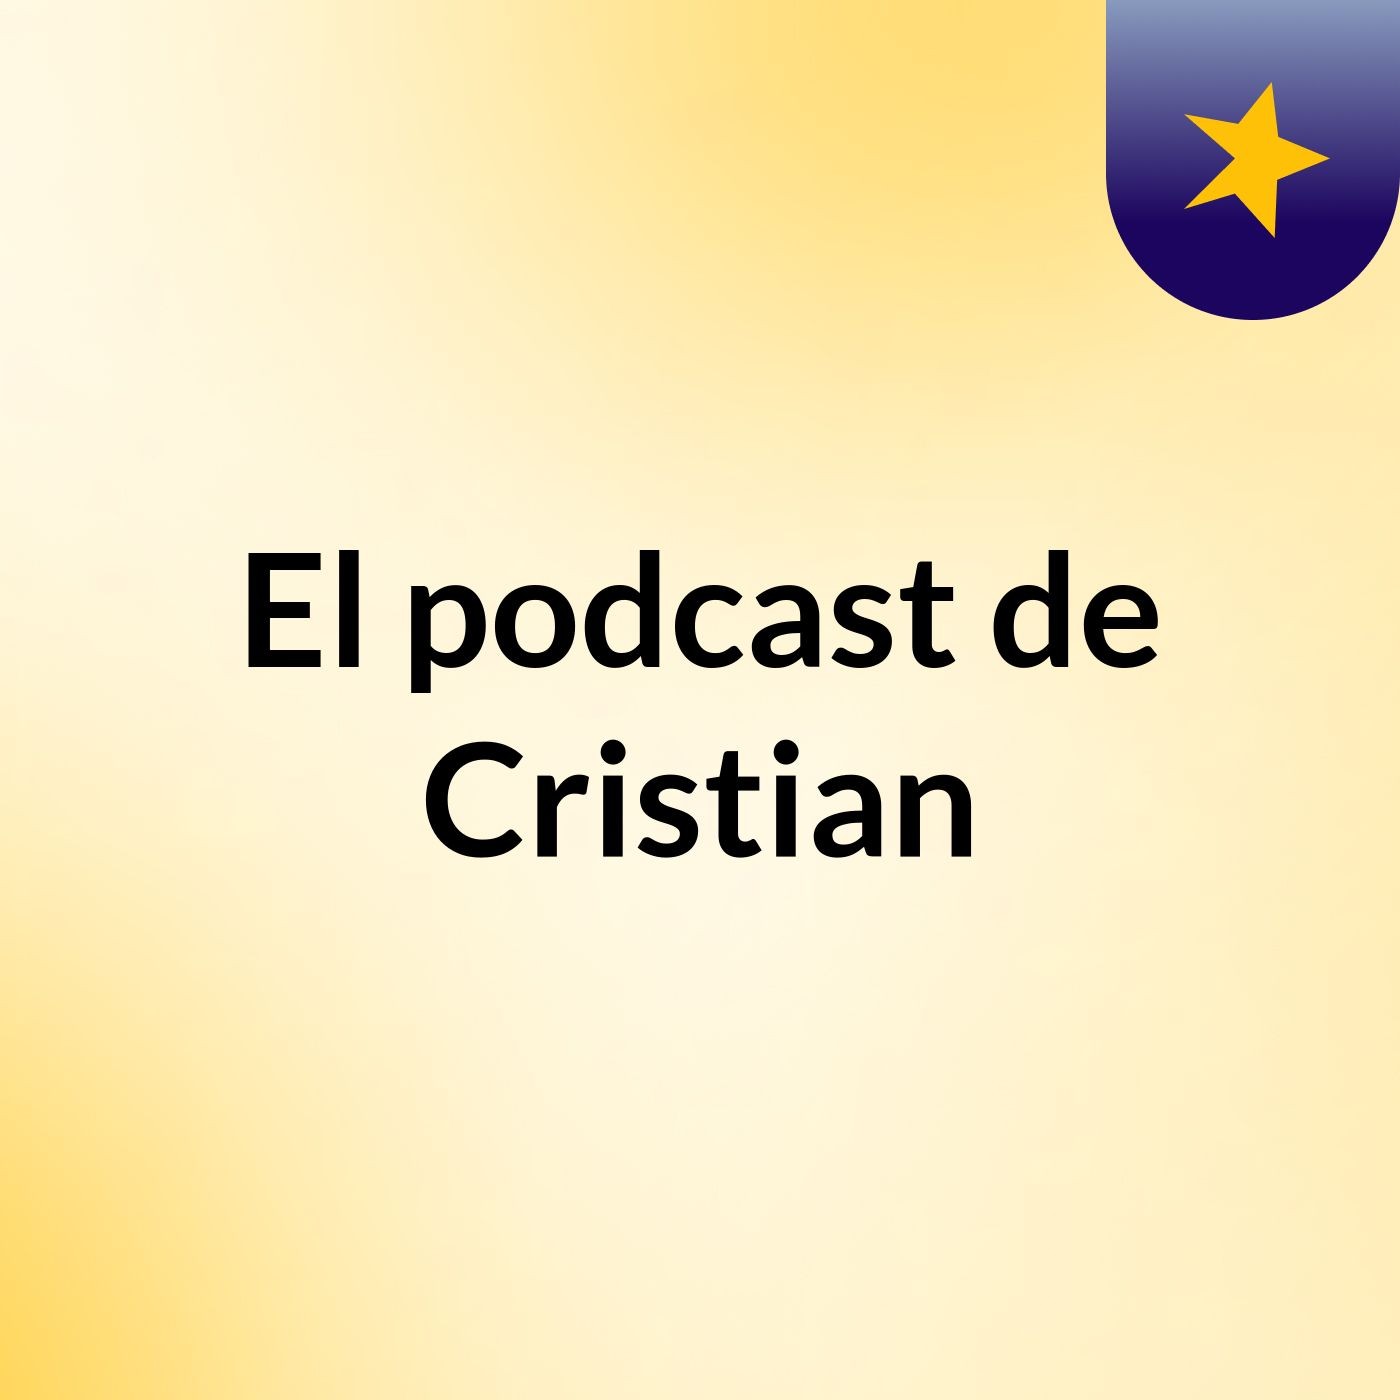 El podcast de Cristian